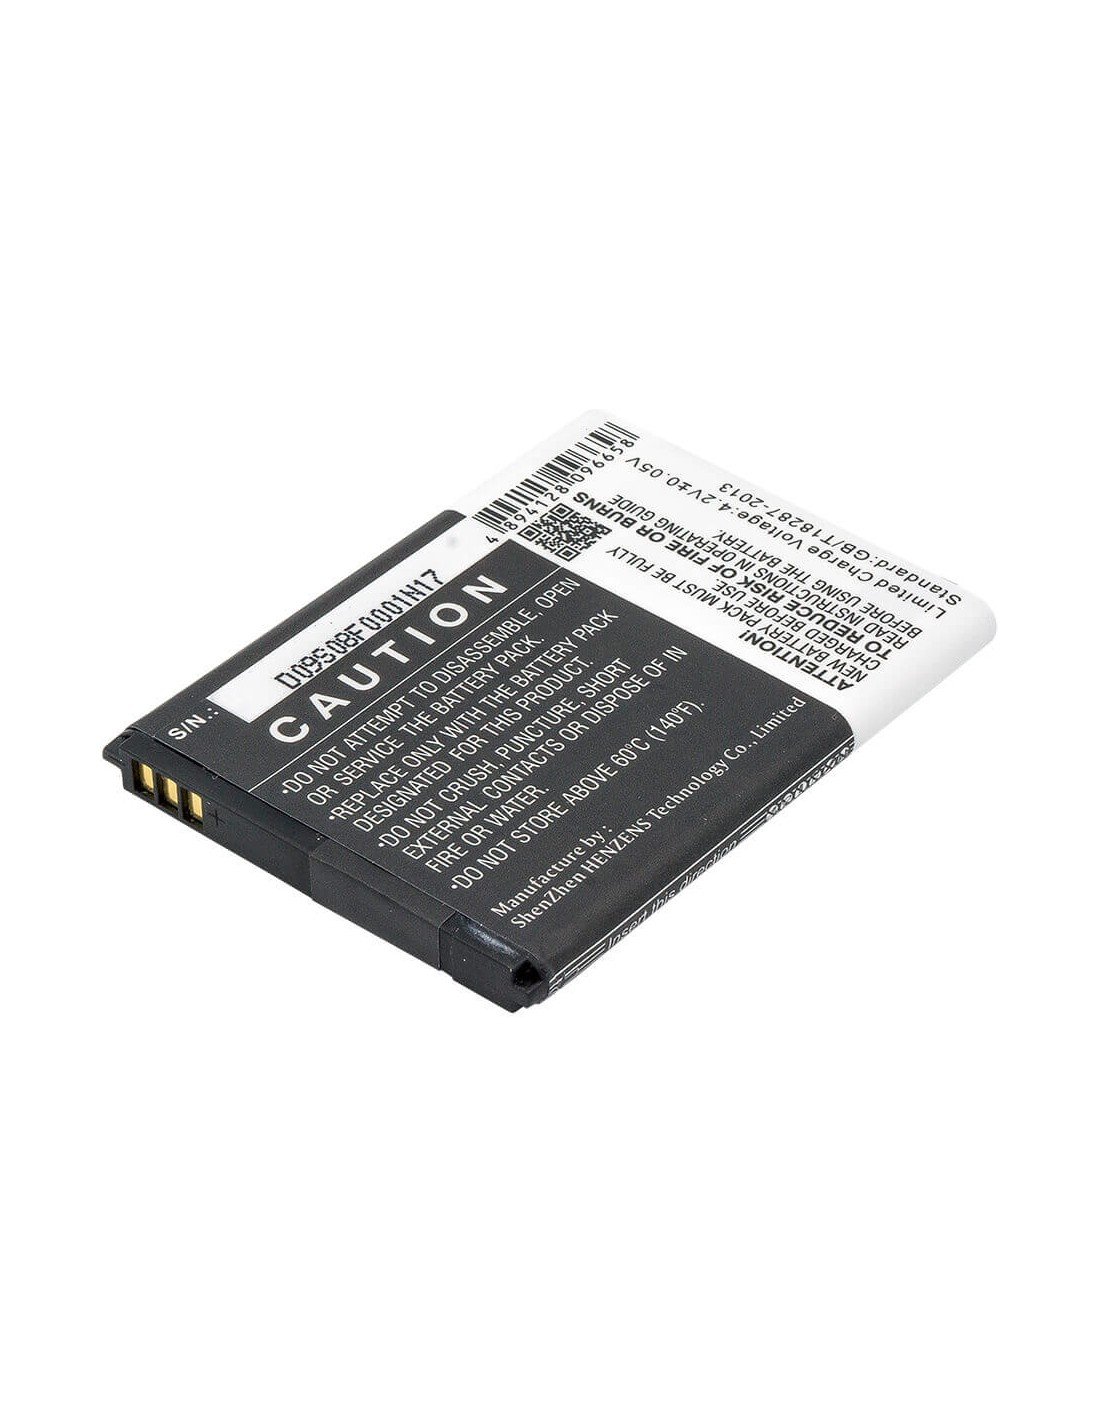 Battery for Acer Liquid Z200, Z200, Liquid M220 3.7V, 1200mAh - 5.18Wh